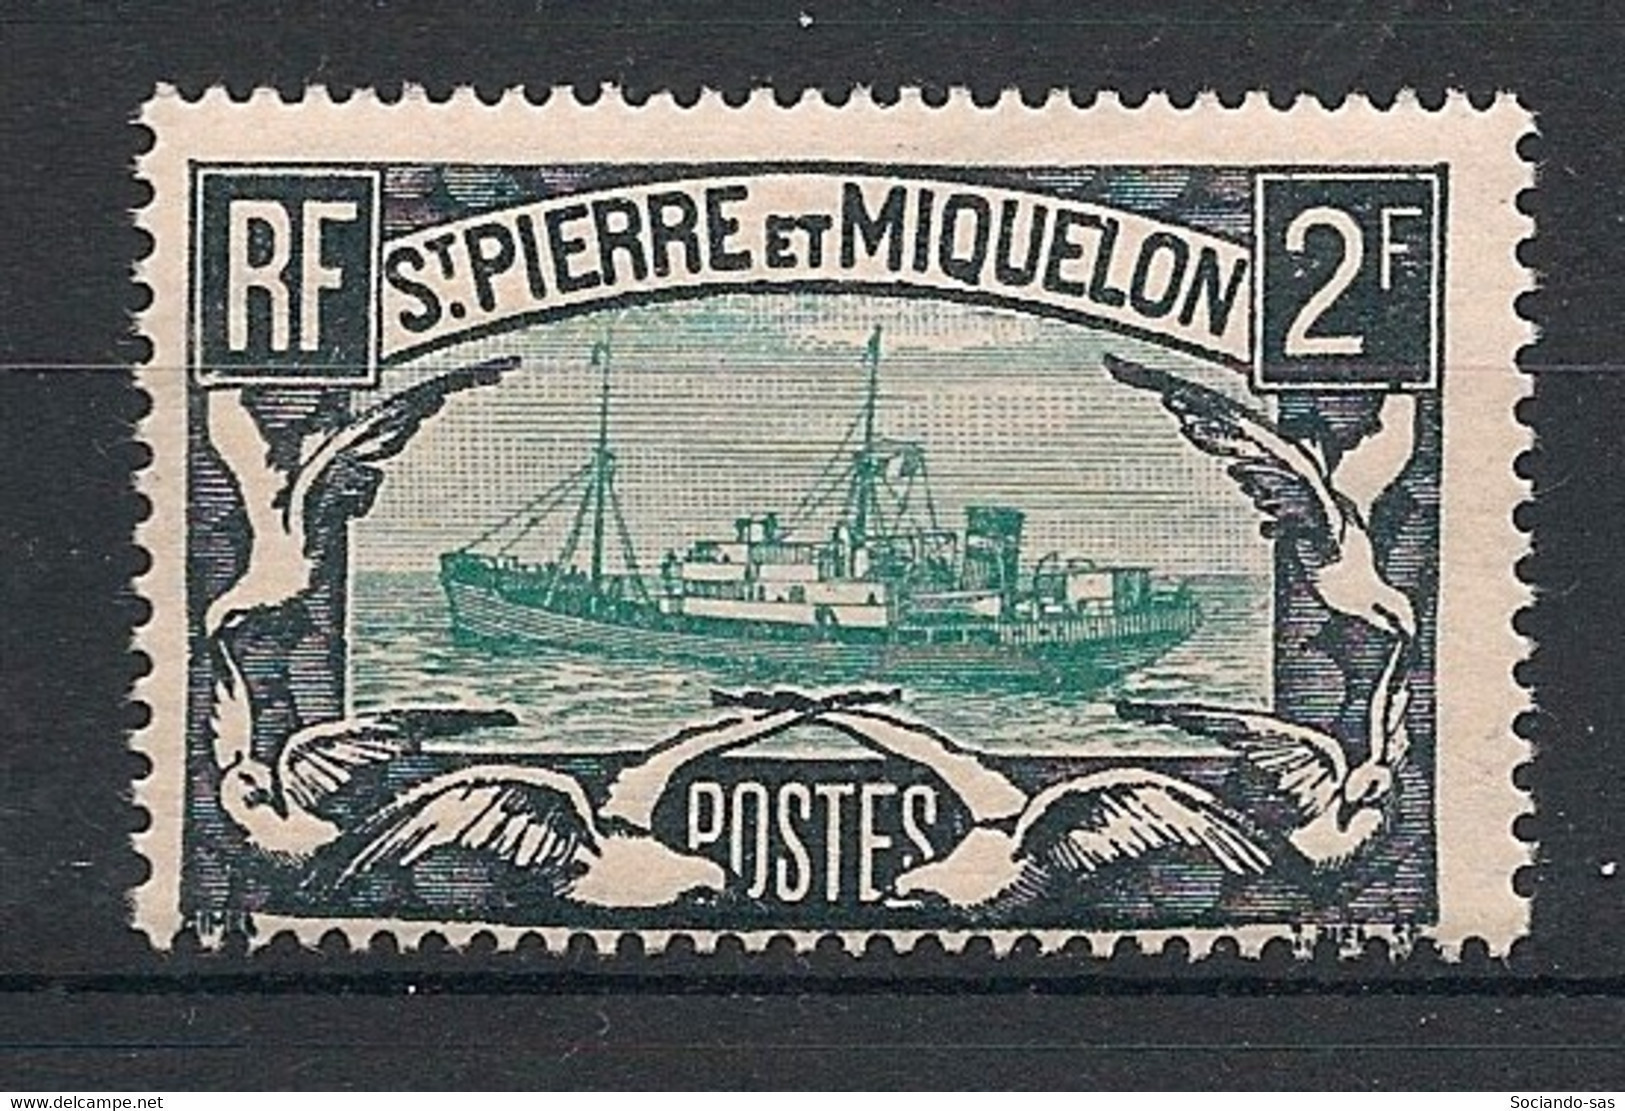 SPM - 1932-33 - N°YT. 155 - Chalutier 2f Noir Et Vert - Neuf Luxe ** / MNH / Postfrisch - Unused Stamps